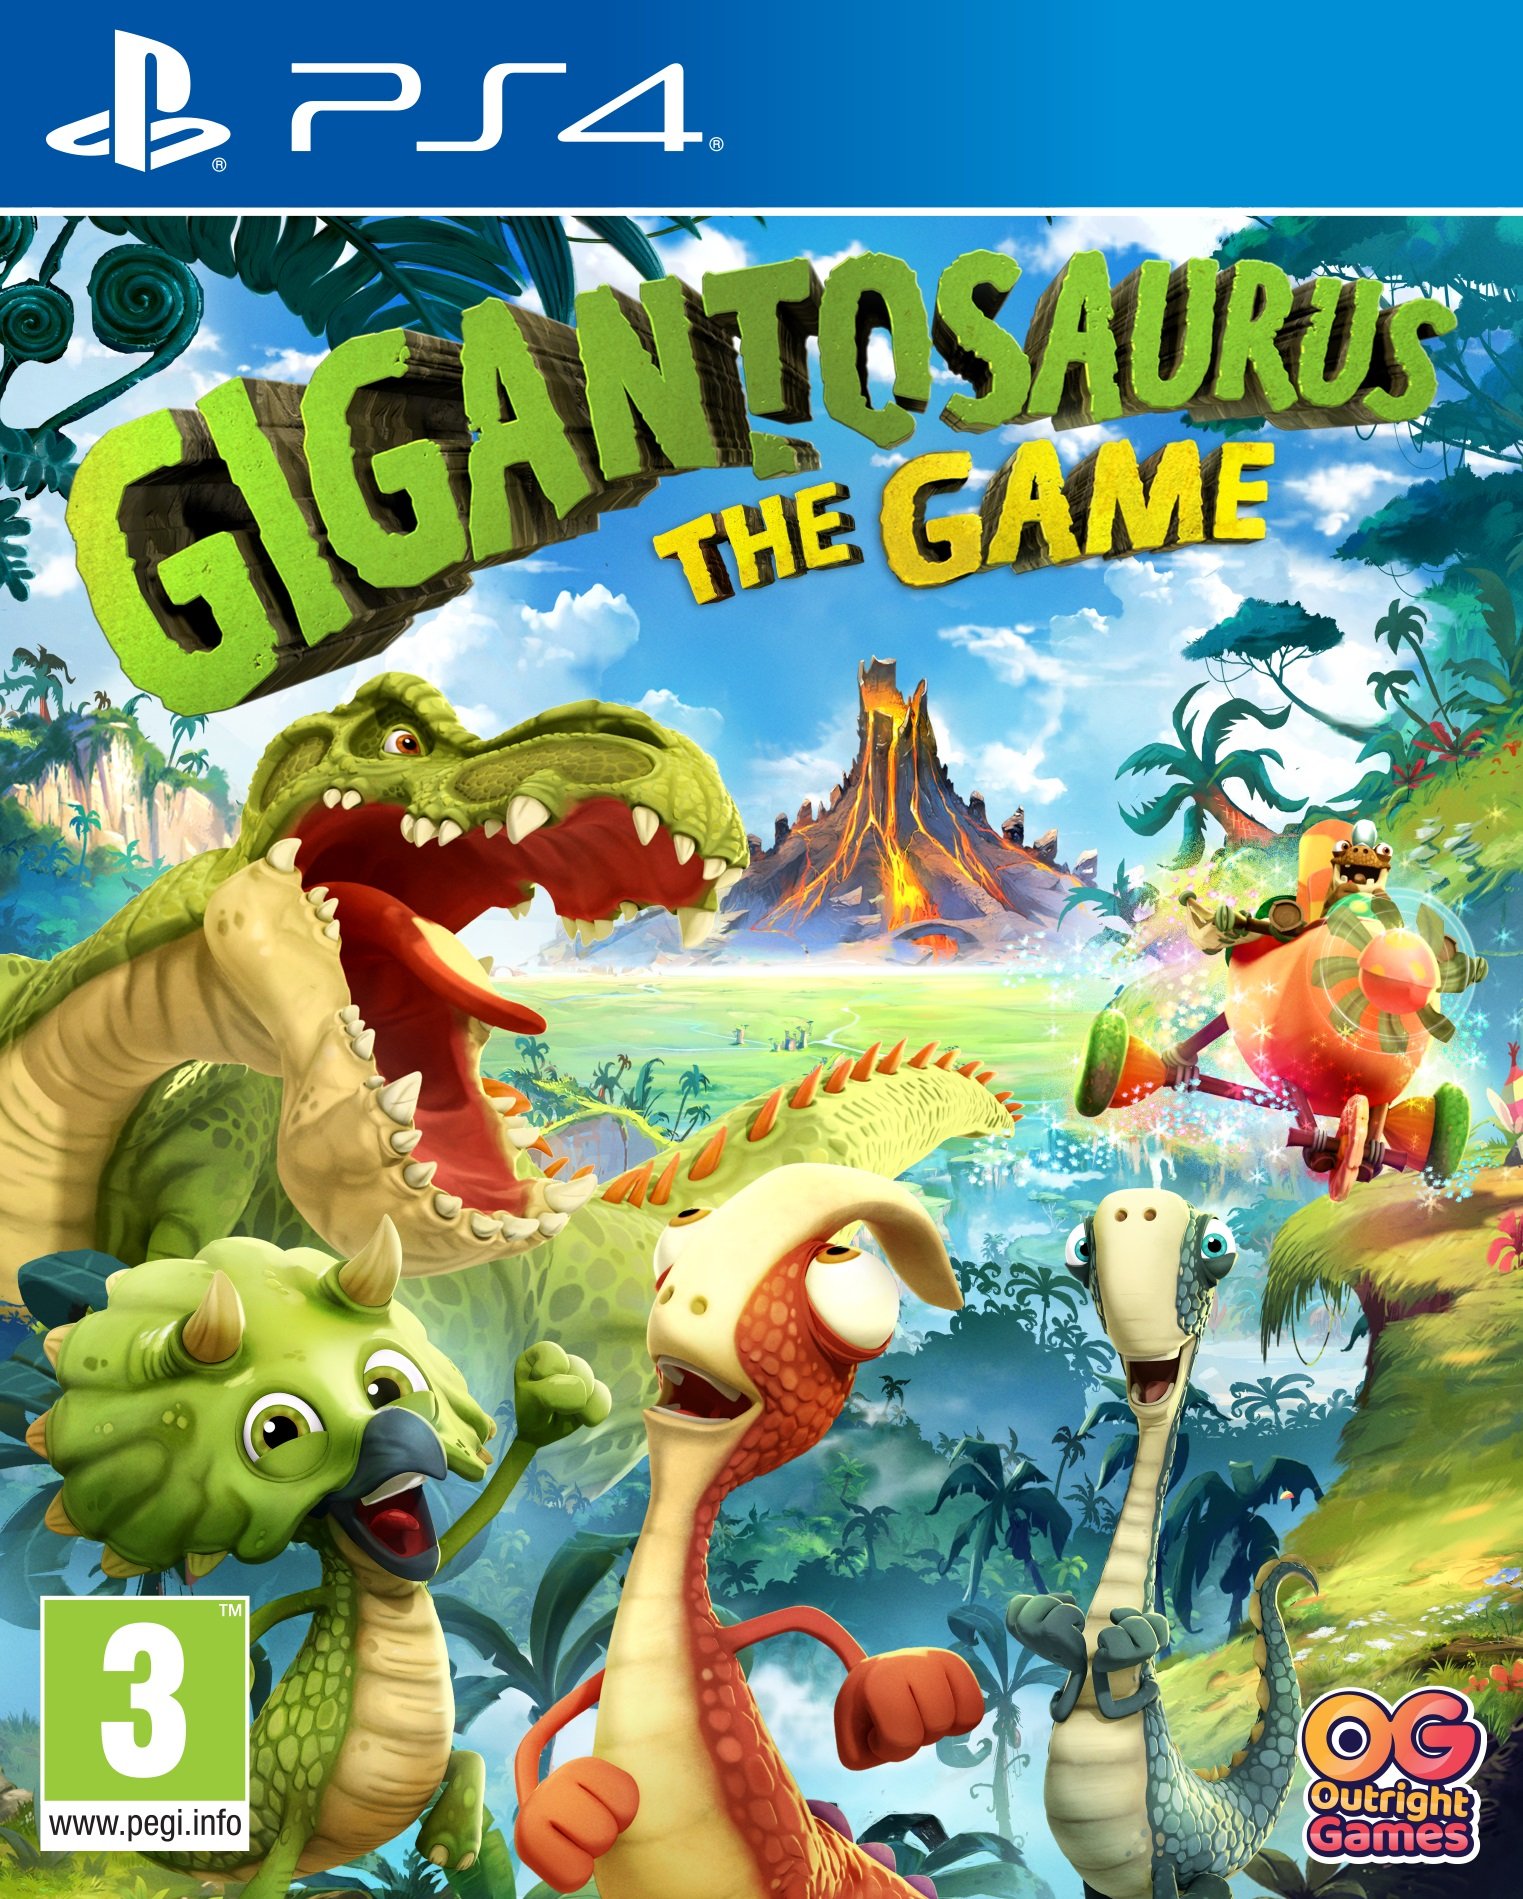 Dwelling forum Charmerende Køb Gigantosaurus: The Game - PlayStation 4 - Engelsk - Standard